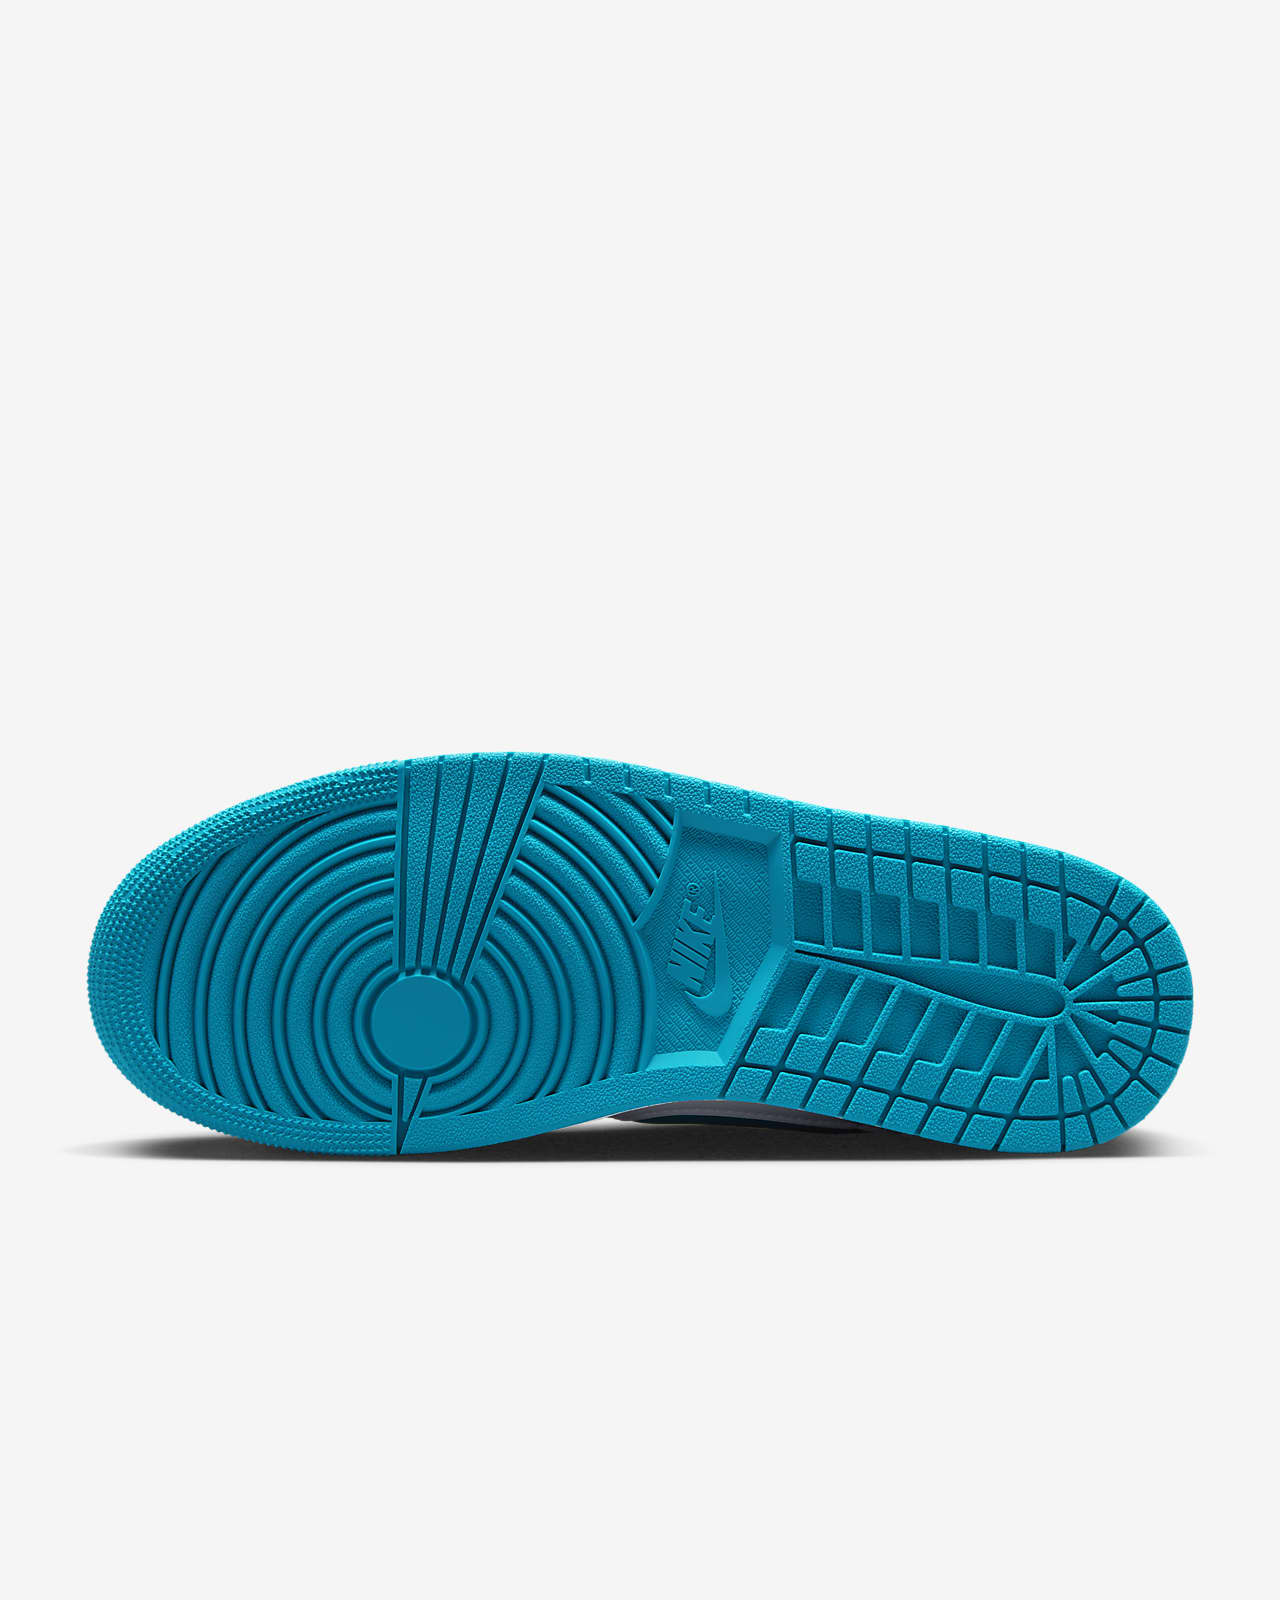 Air Jordan 1 Low FlyEase Men's Easy On/Off Shoes. Nike CA